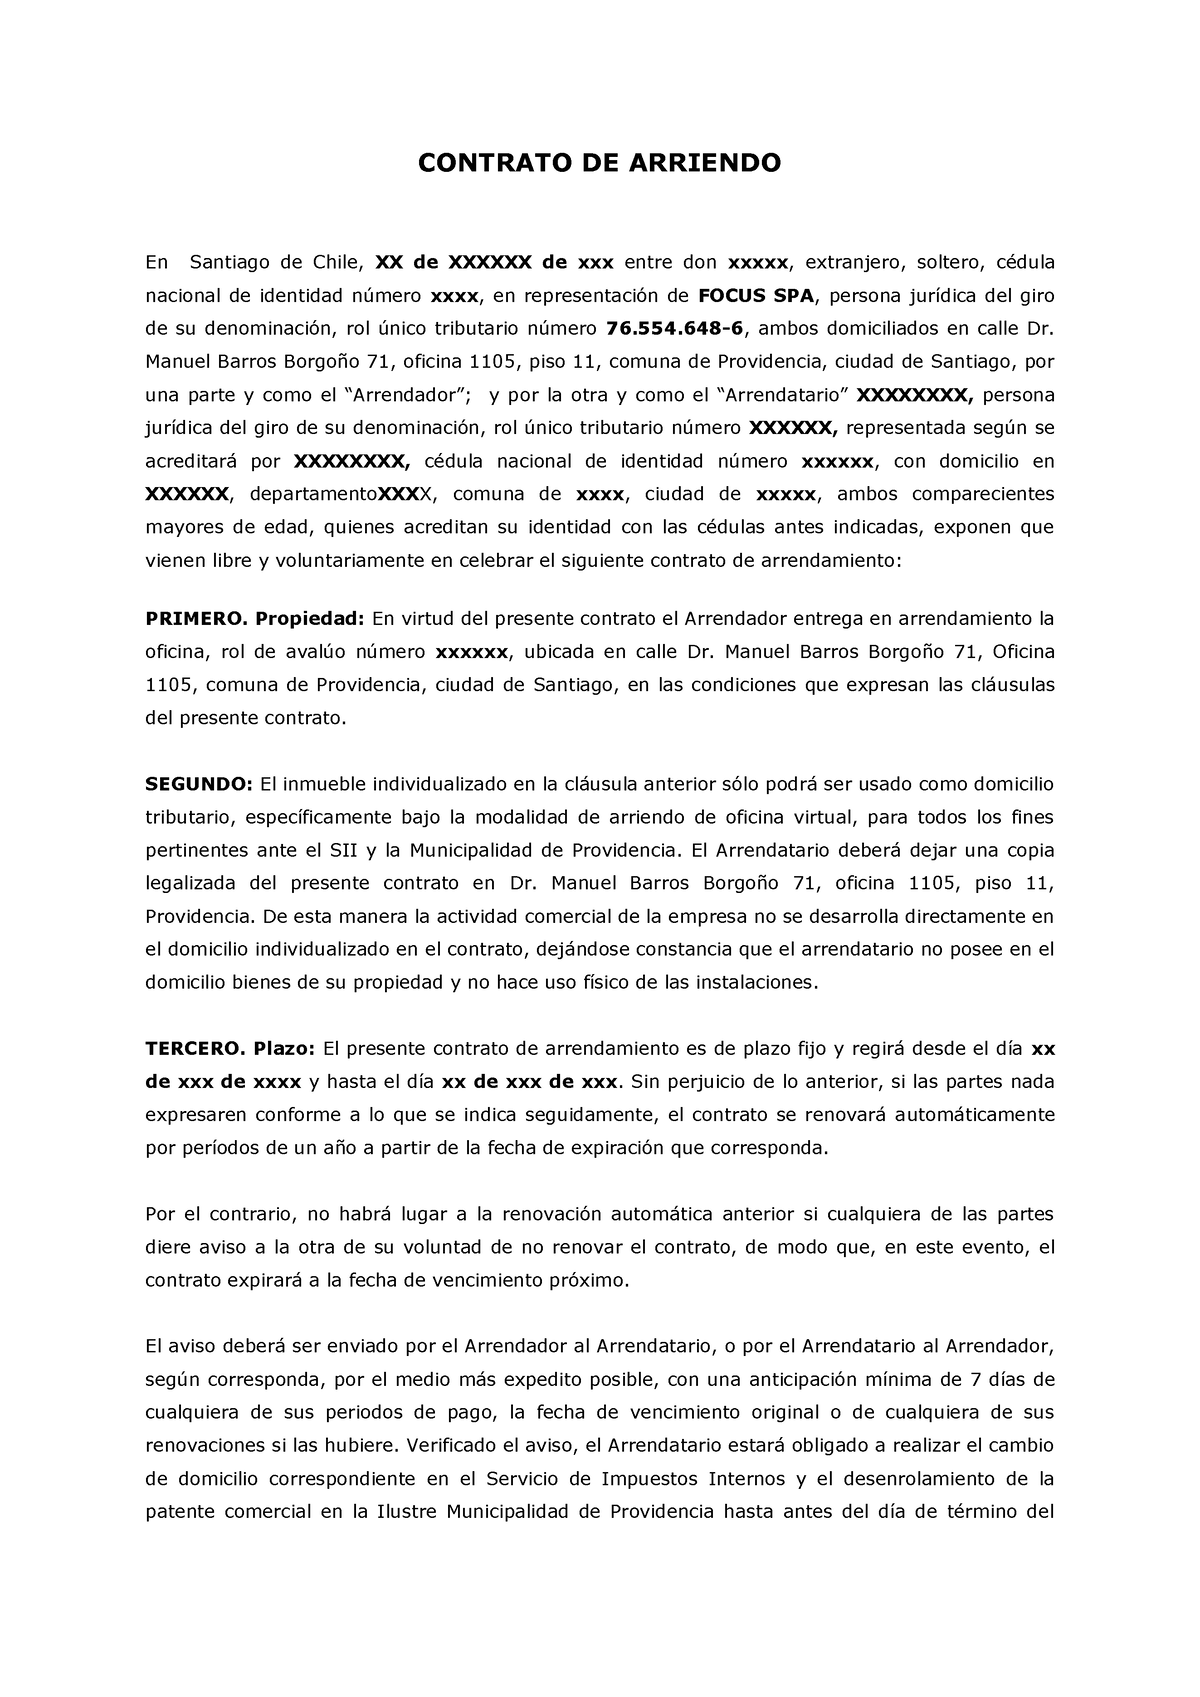 Borrador Contrato De Arriendo Contrato De Arriendo En Santiago De Chile Xx De Xxxxxx De Xxx 4216